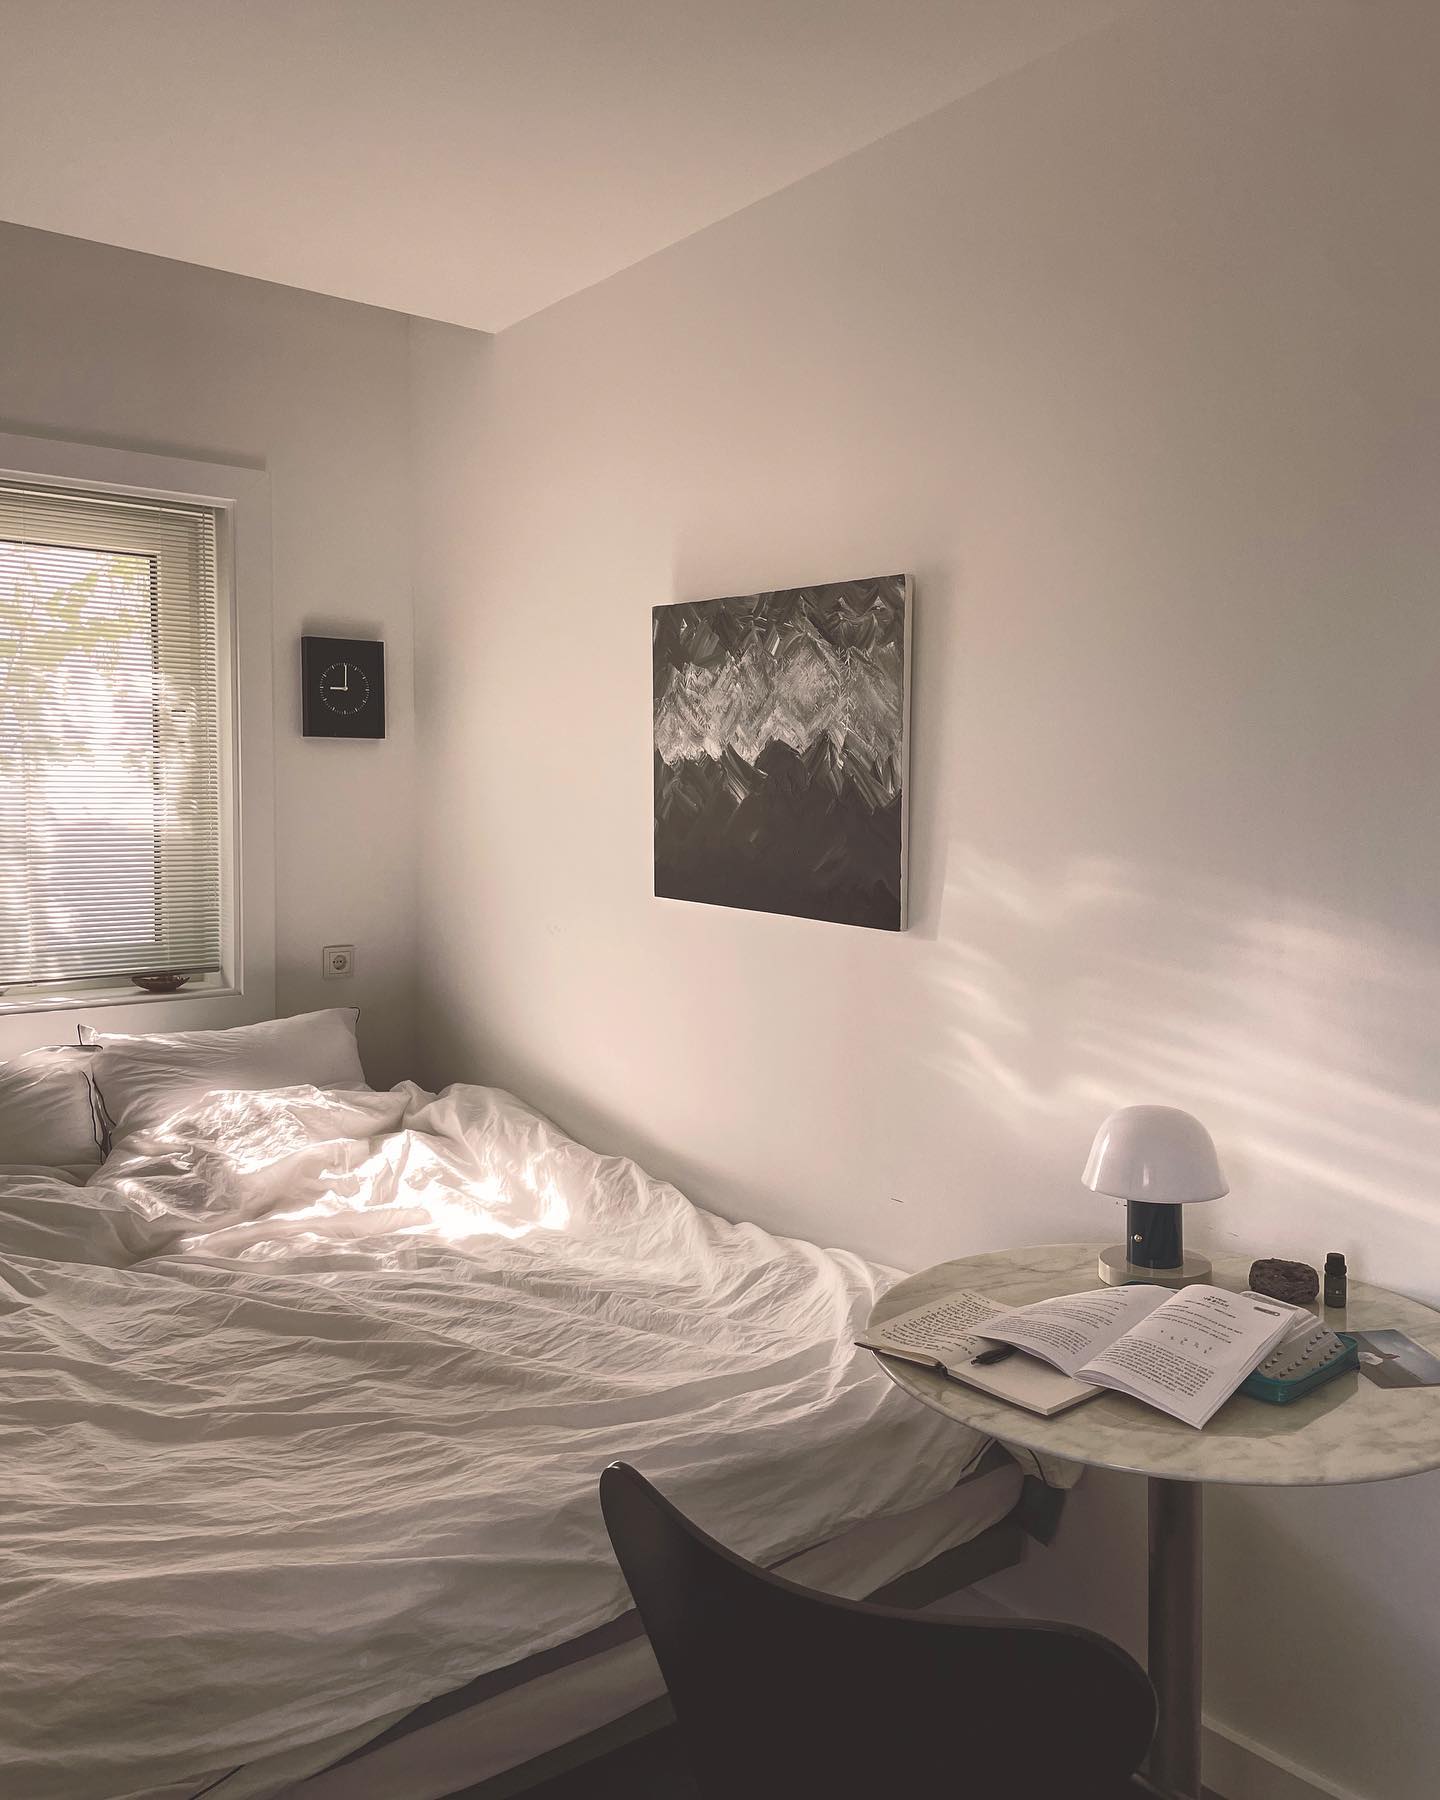 햇살이 기분 좋게 부서지는 침실. 침구는 호텔 크랜베리 제품. 아내의 블로그 한 켠에 '콜라매거진'이란 이름으로 취향을 담은 브랜드를 주제로 연재하고 있다. 네 번째 주인공이었던 호텔 크랜베리.